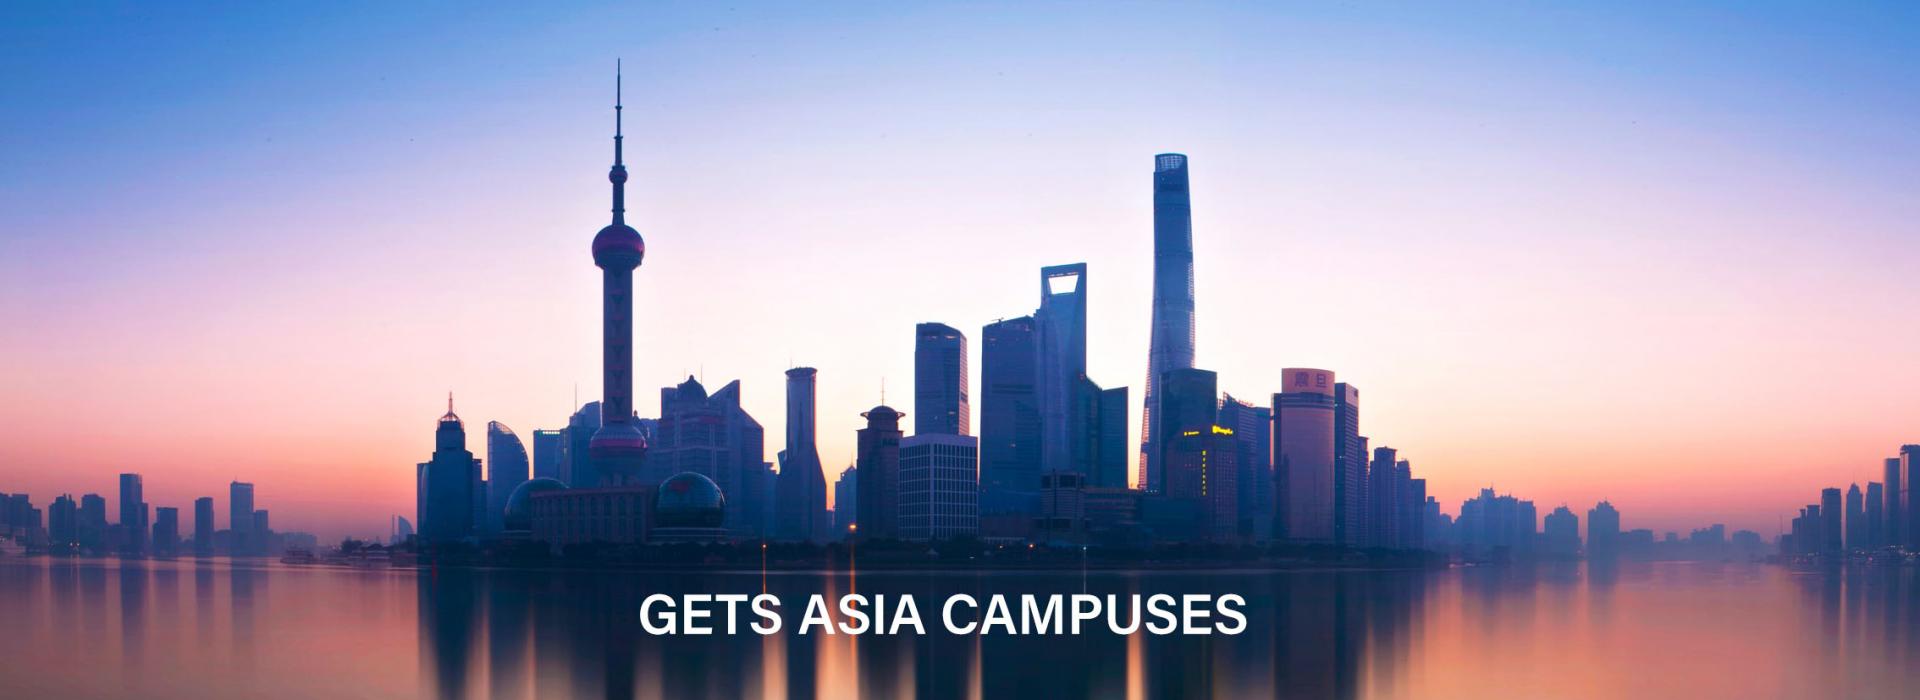 Asia Campus Banner